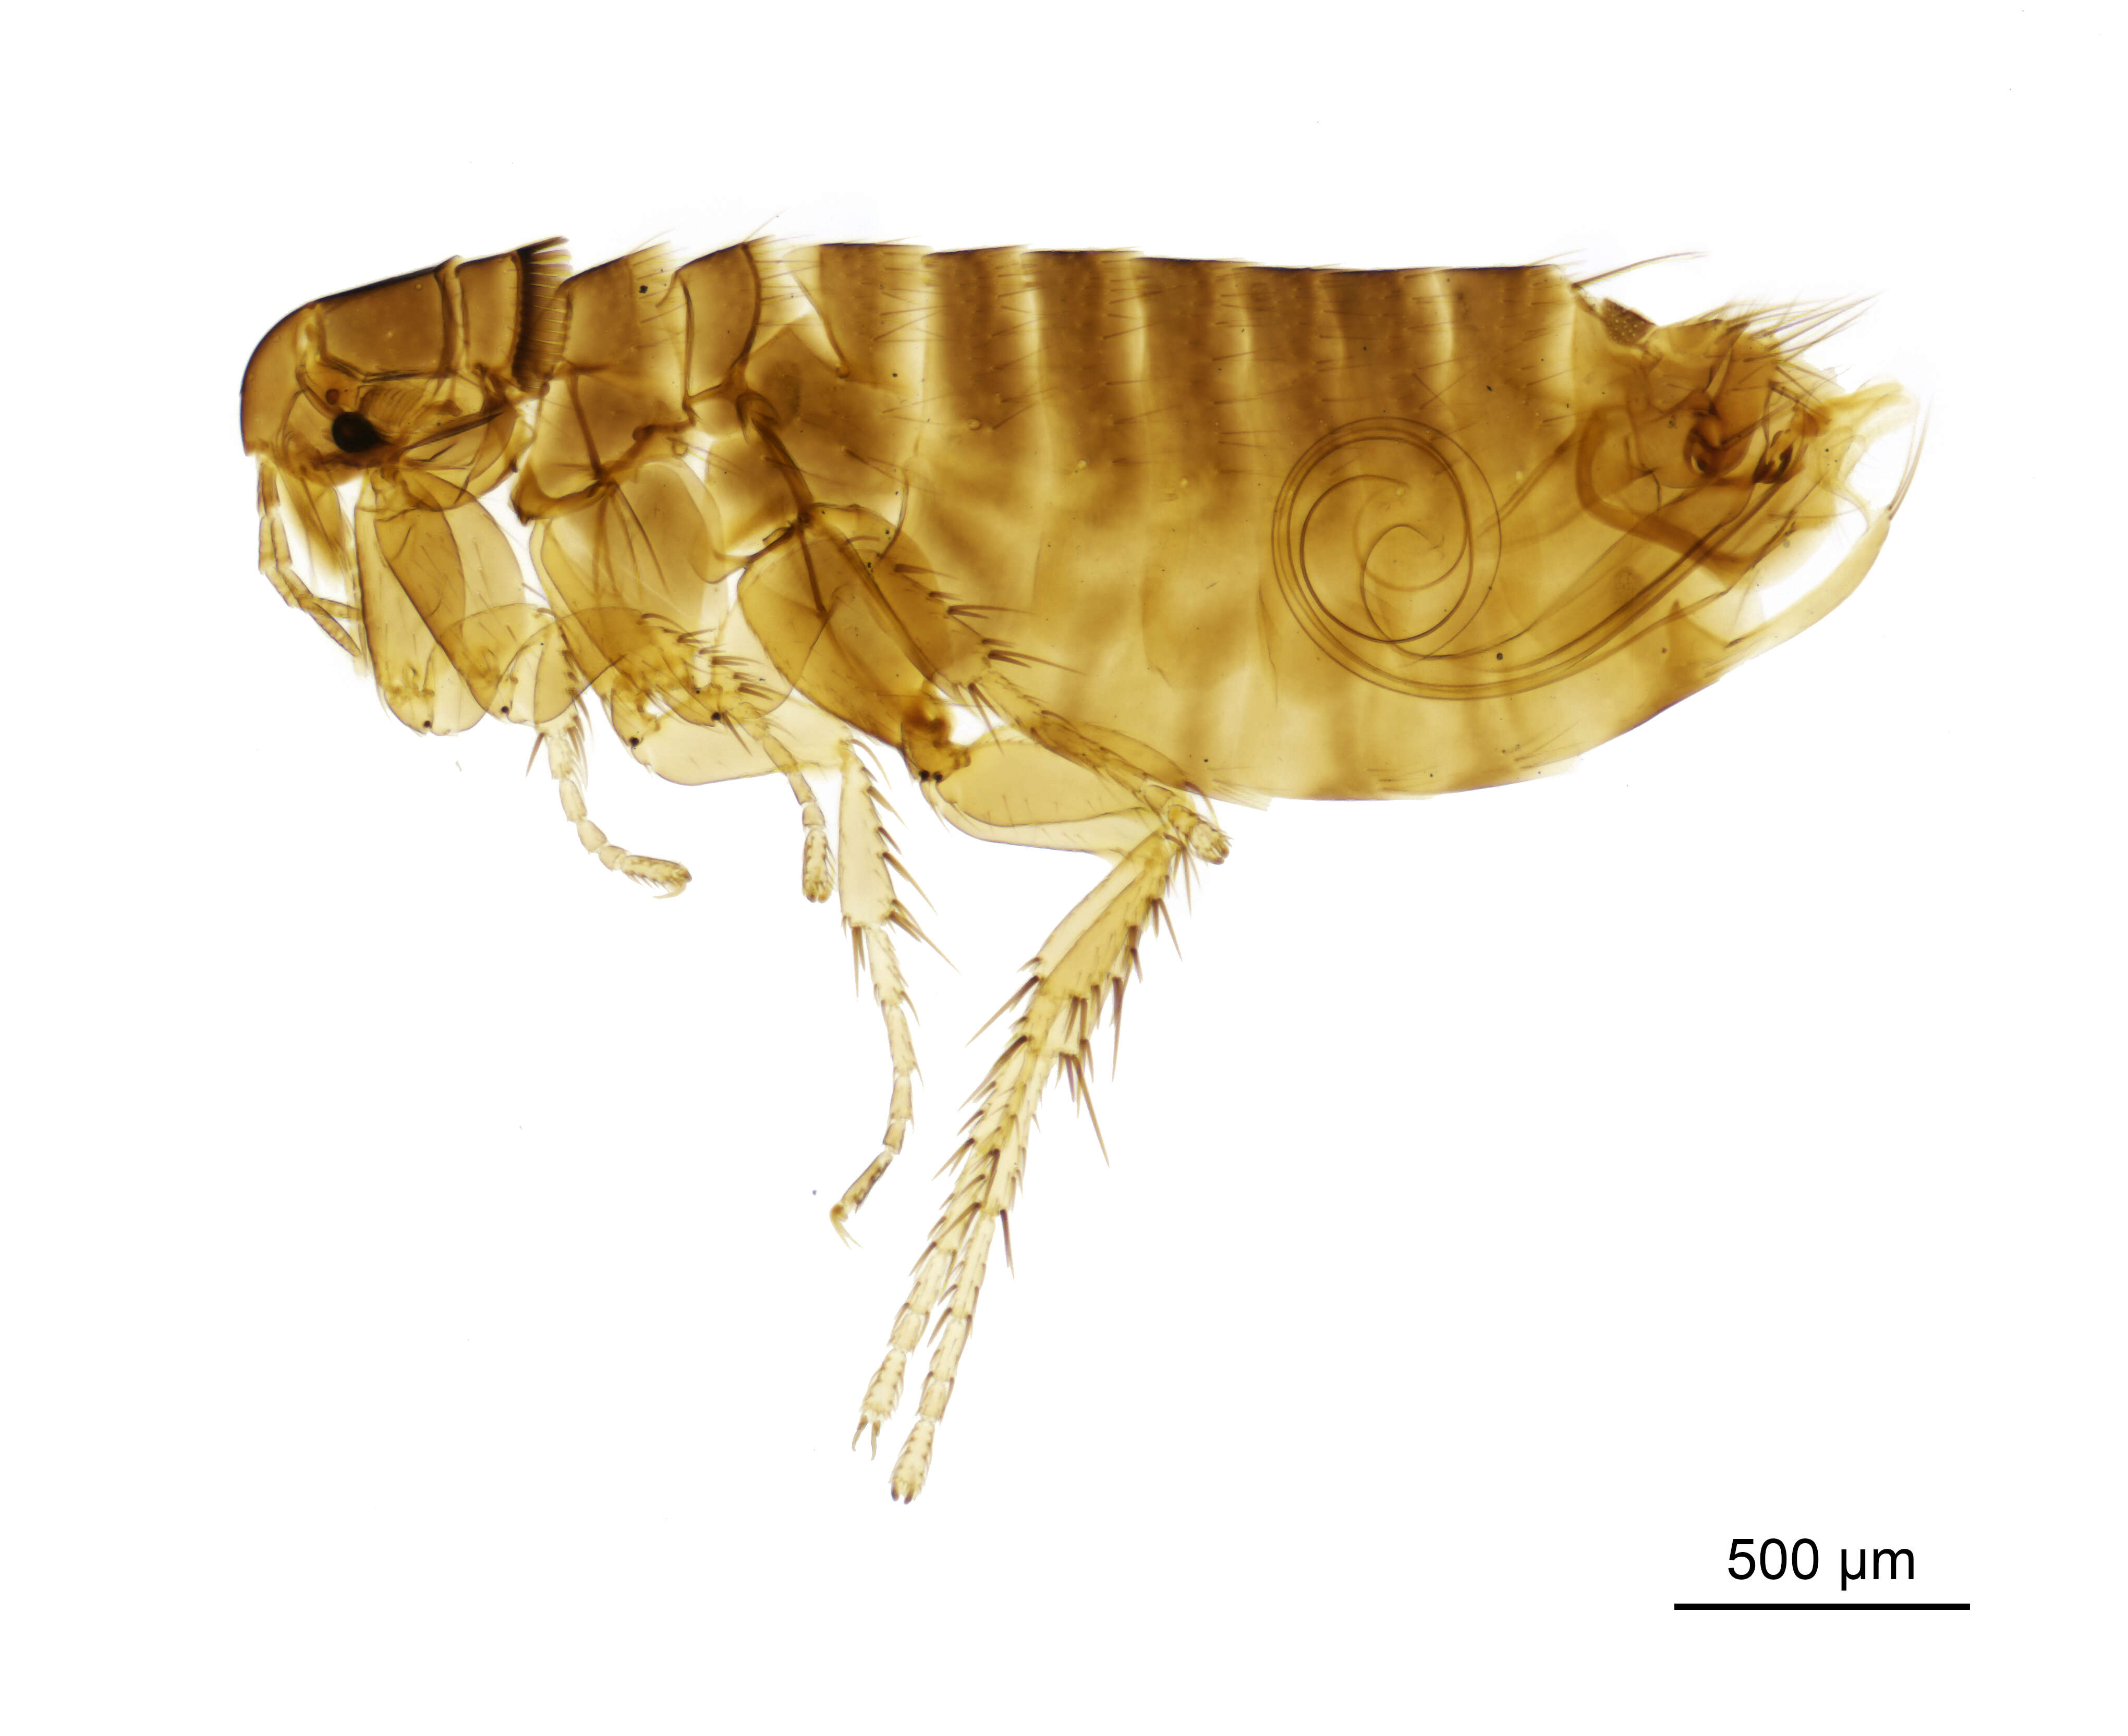 Image of Hen flea